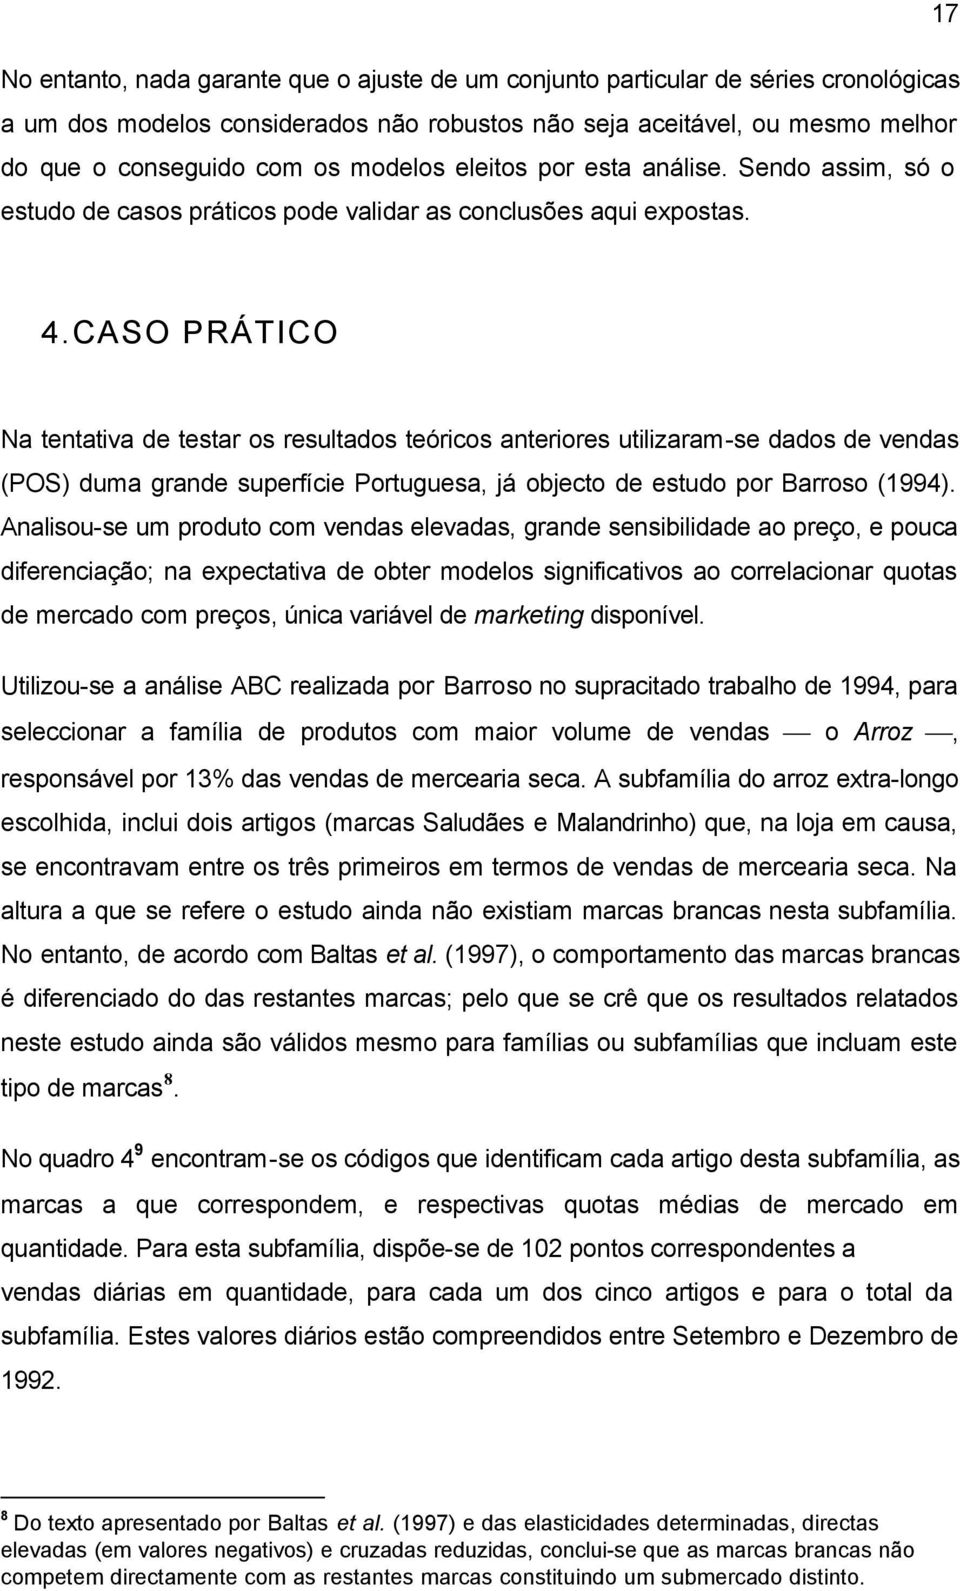 CASO PRÁTICO Na tentatva de testar os resutados teórcos anterores utzara-se dados de vendas (POS) dua grande superfíce Portuguesa, já objecto de estudo por Barroso (1994).